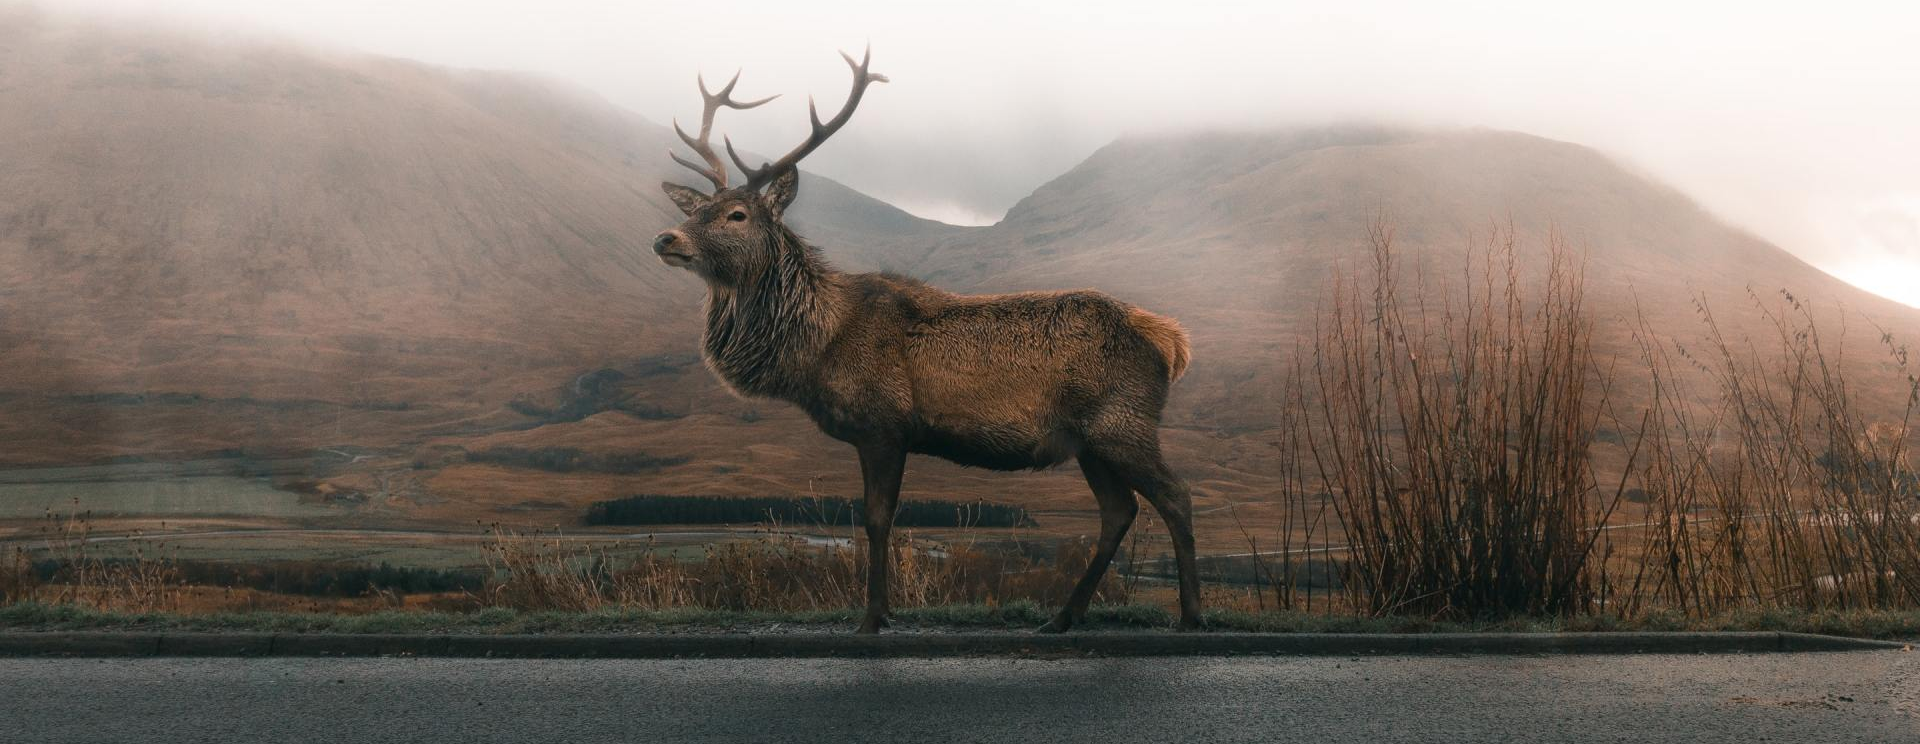 Elk standing on road